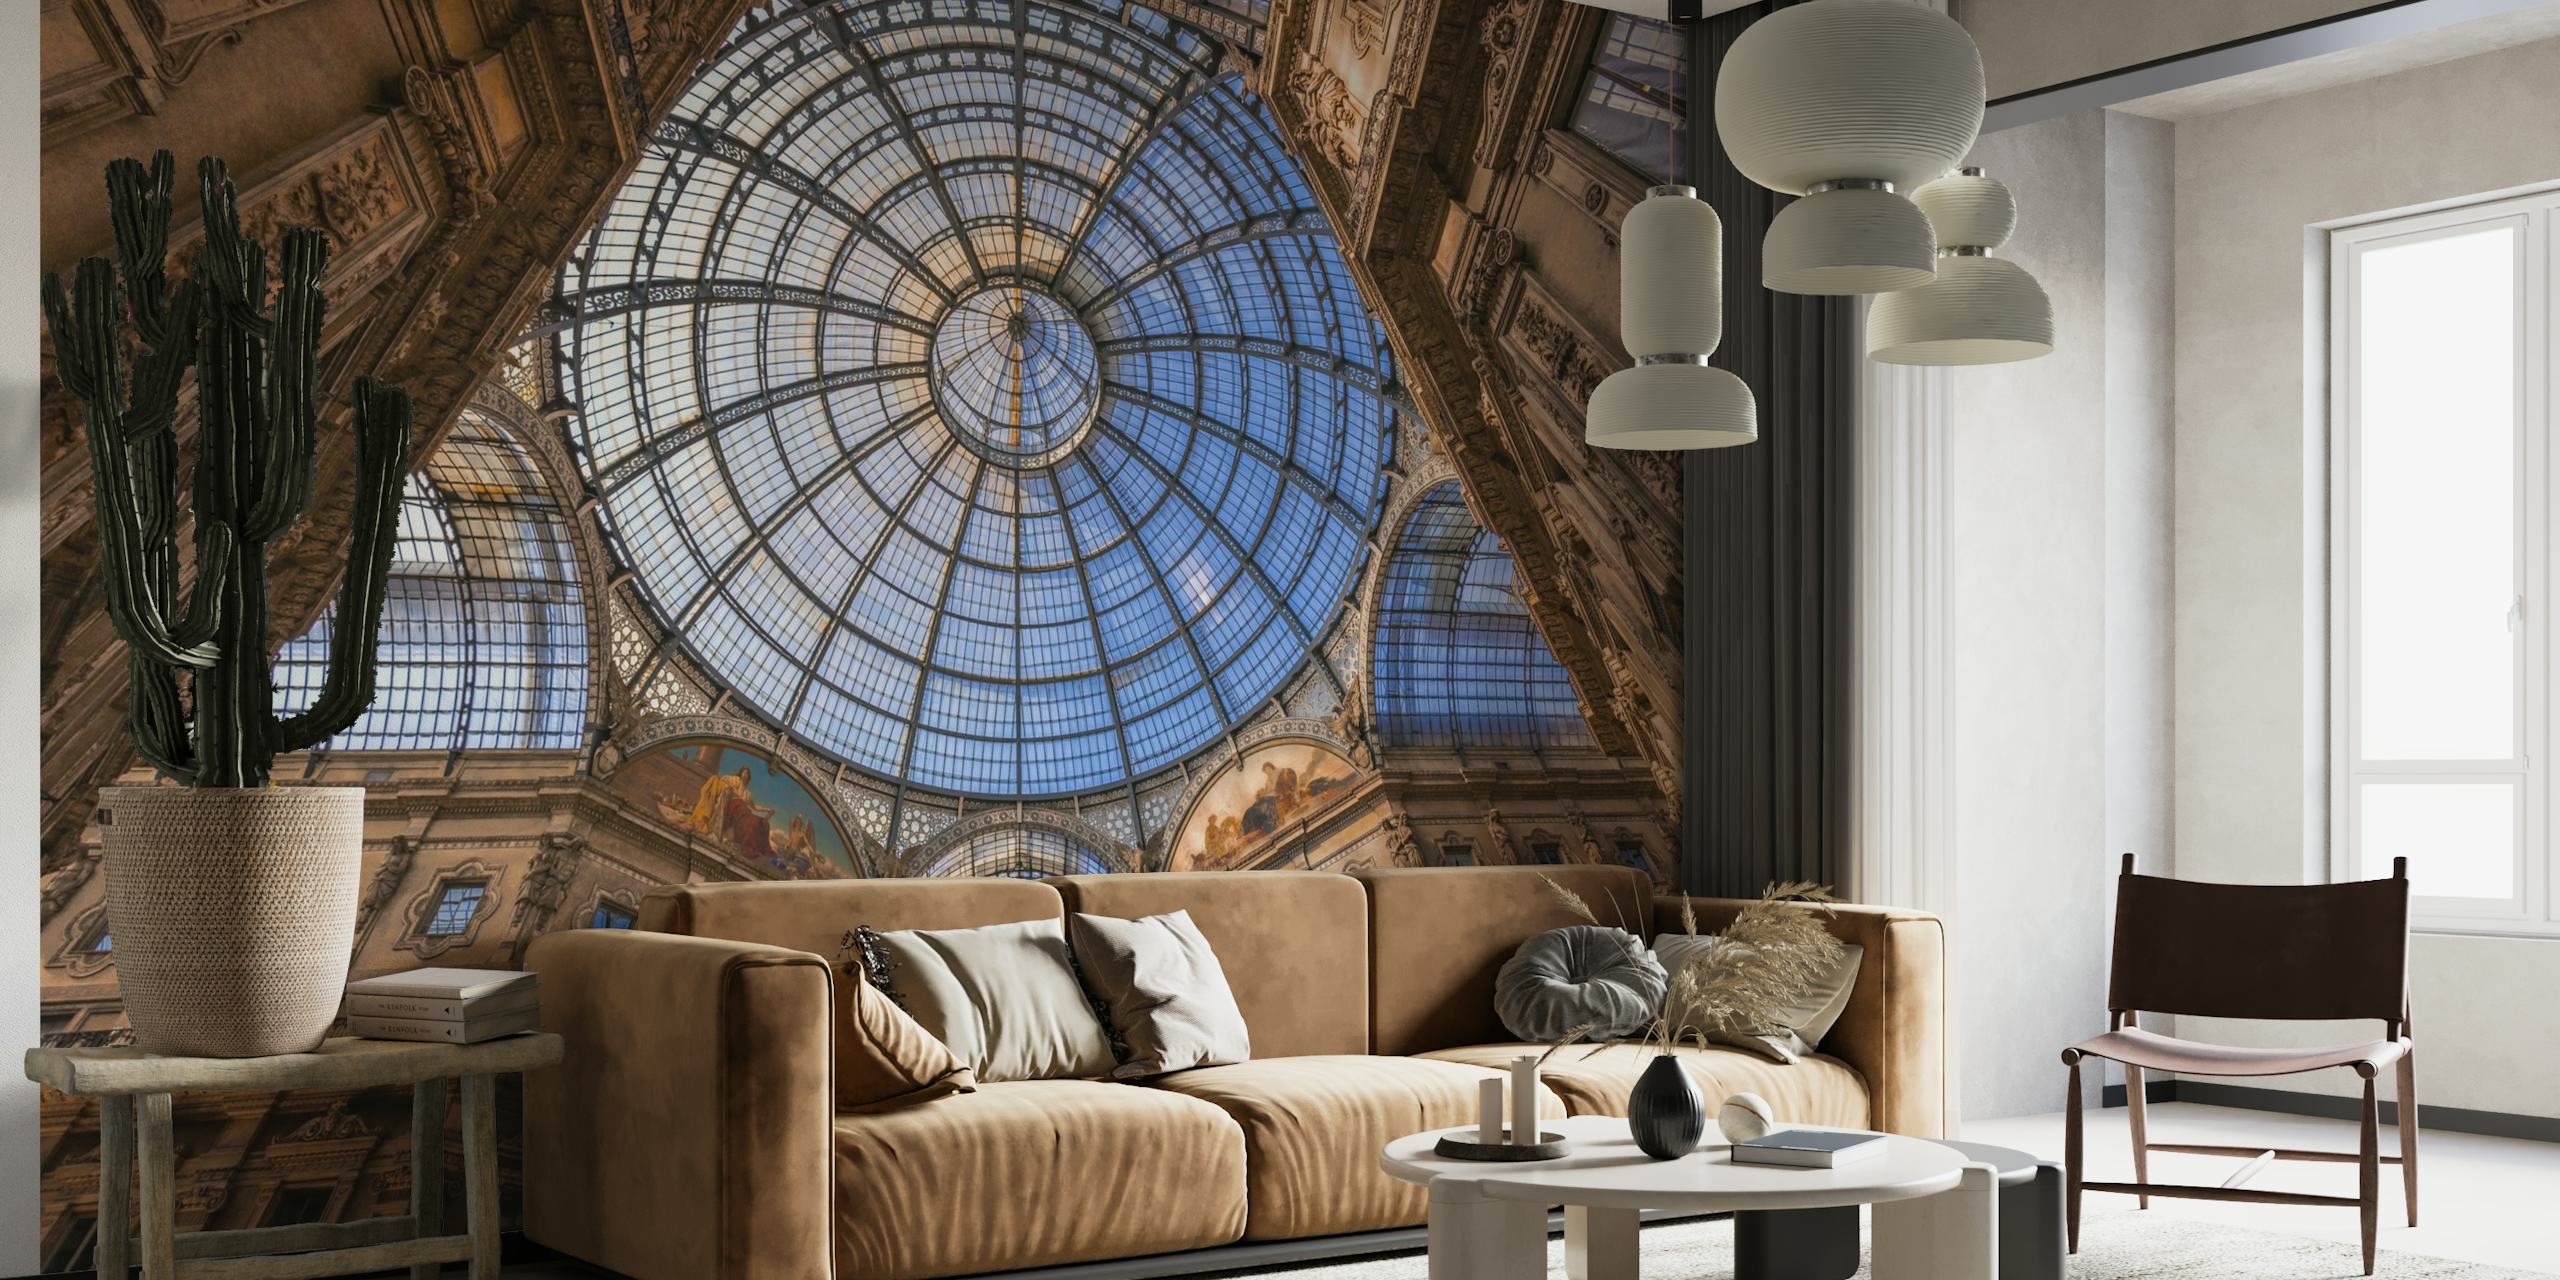 Architektonisches Kuppeldecken-Wandbild in Blau- und Beigetönen, das der Raumdekoration einen majestätischen Touch verleiht.